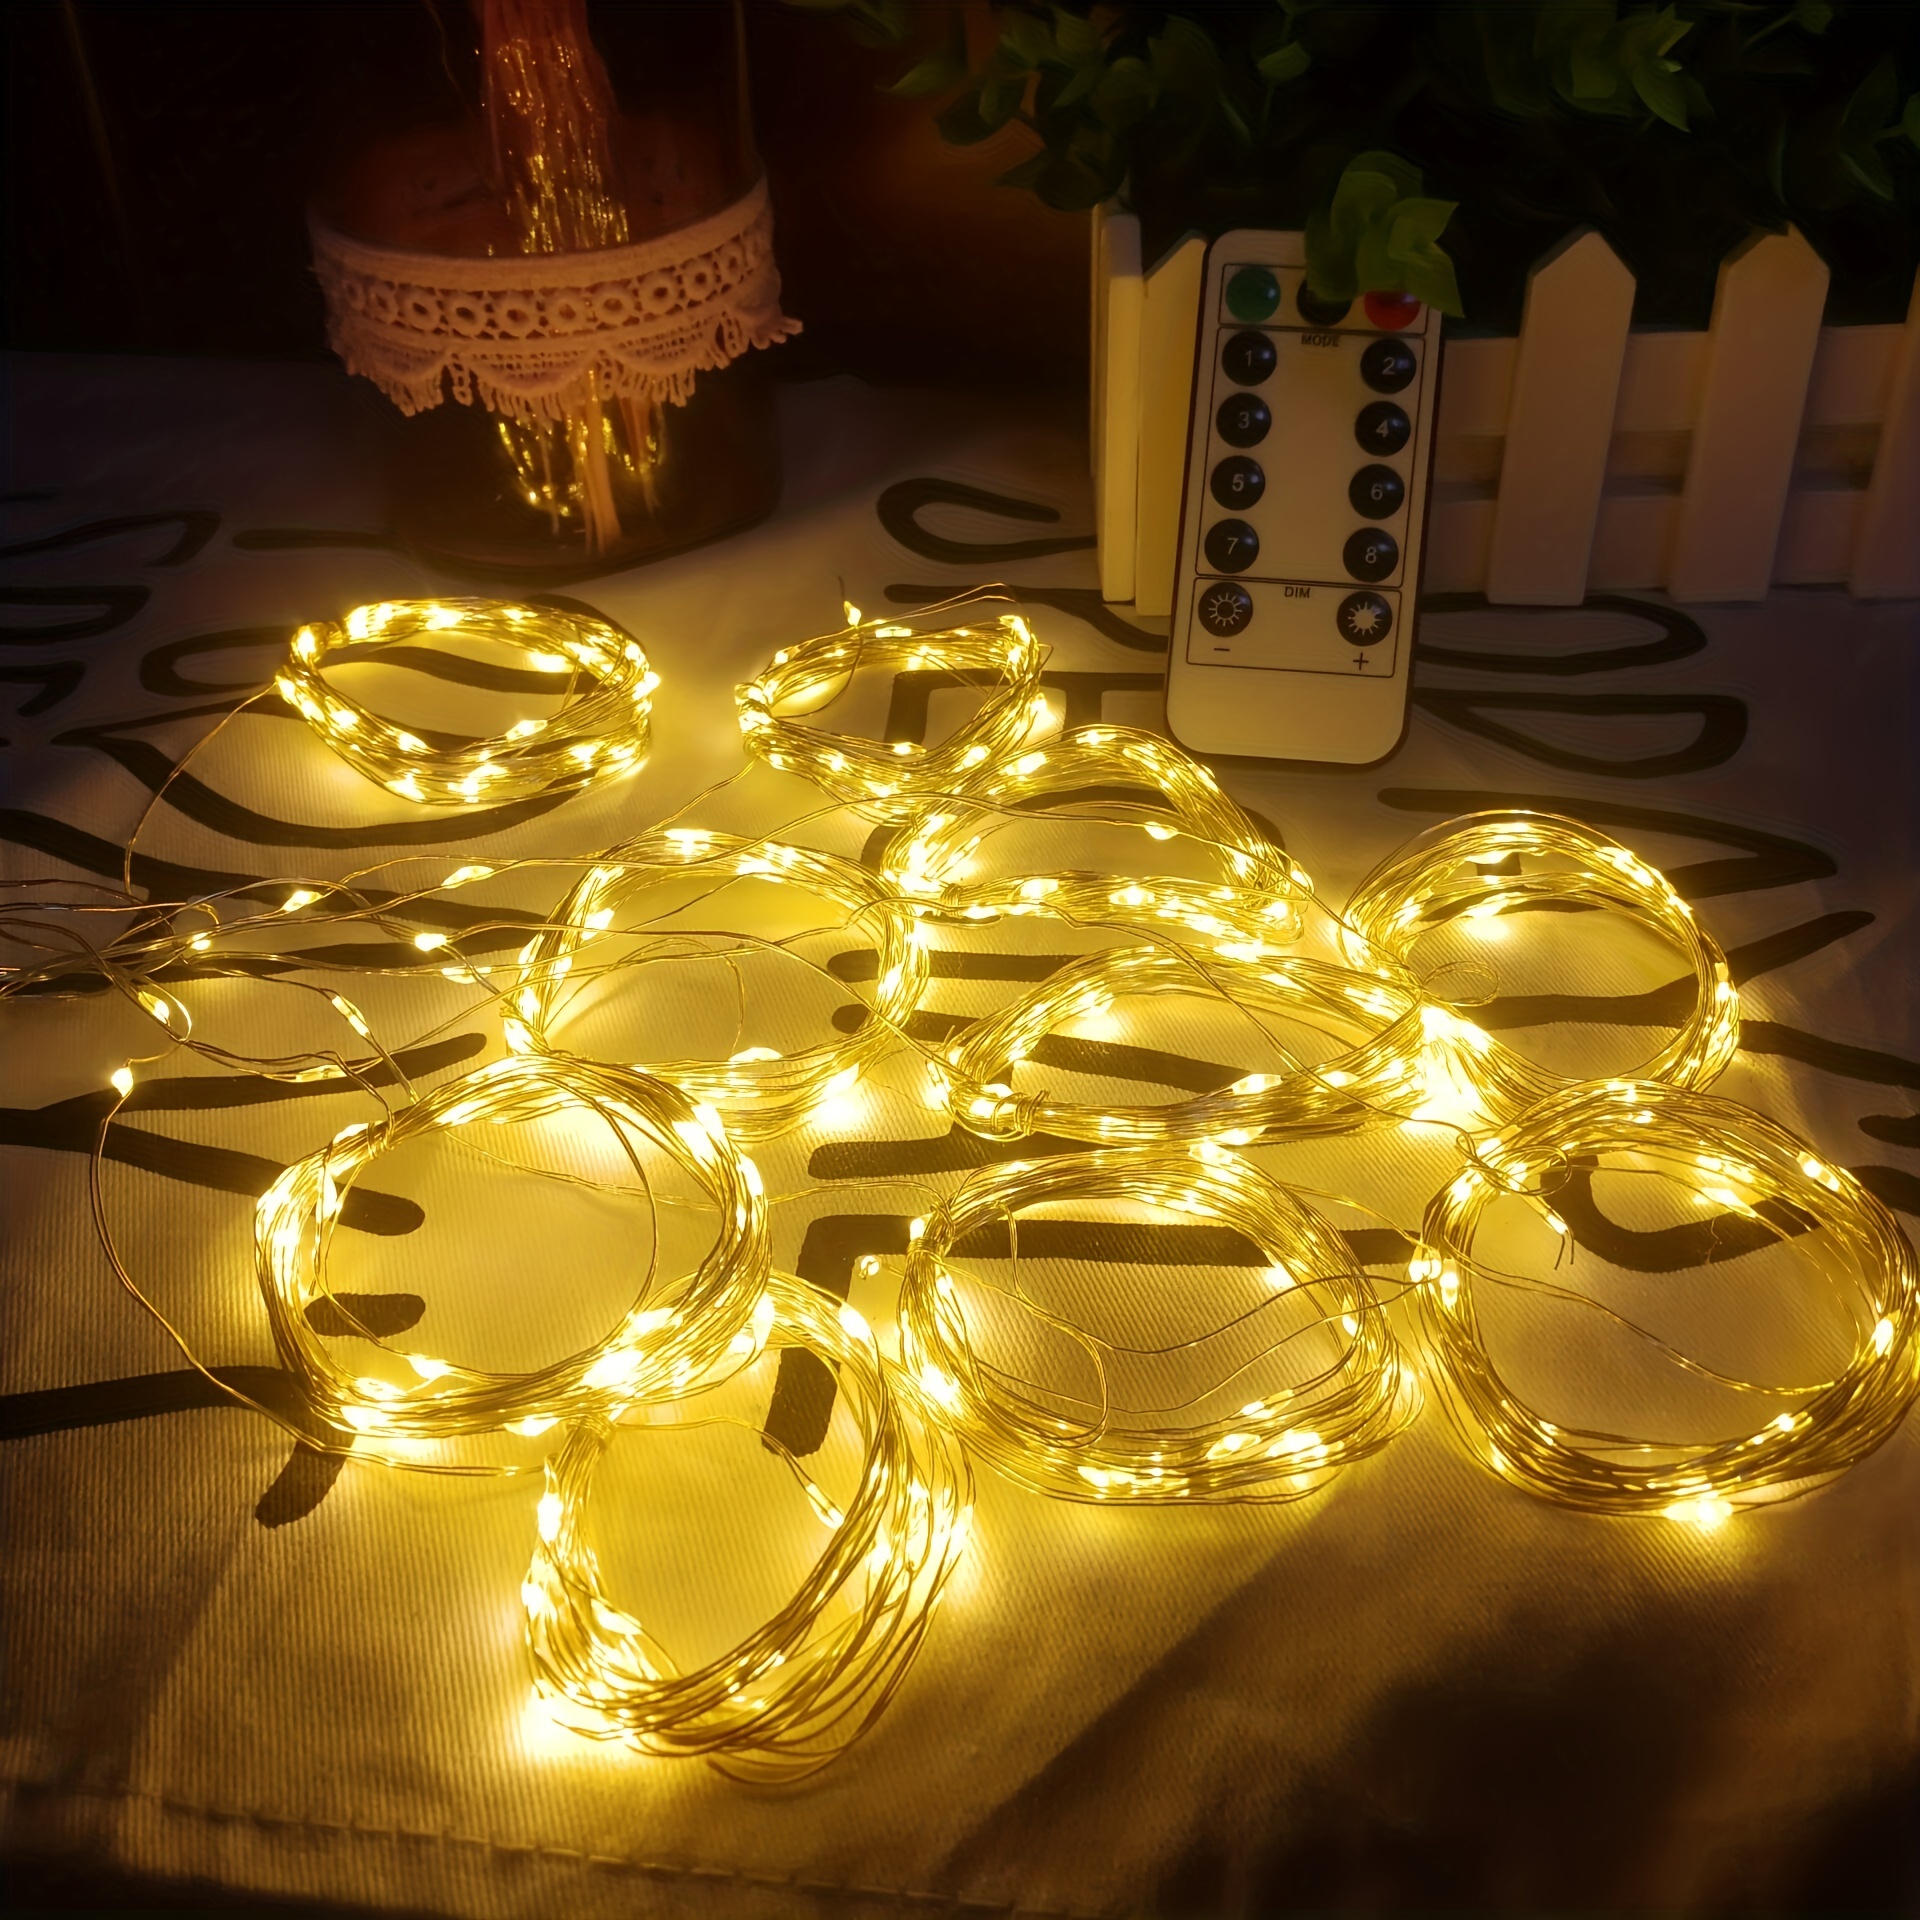 ikasus Plumes Rideau Lumières,300 LED Plumes Fée Guirlande Lumineuse avec 8  Modes de Lumière USB Télécommande Romantique,pour Décoration Intérieur